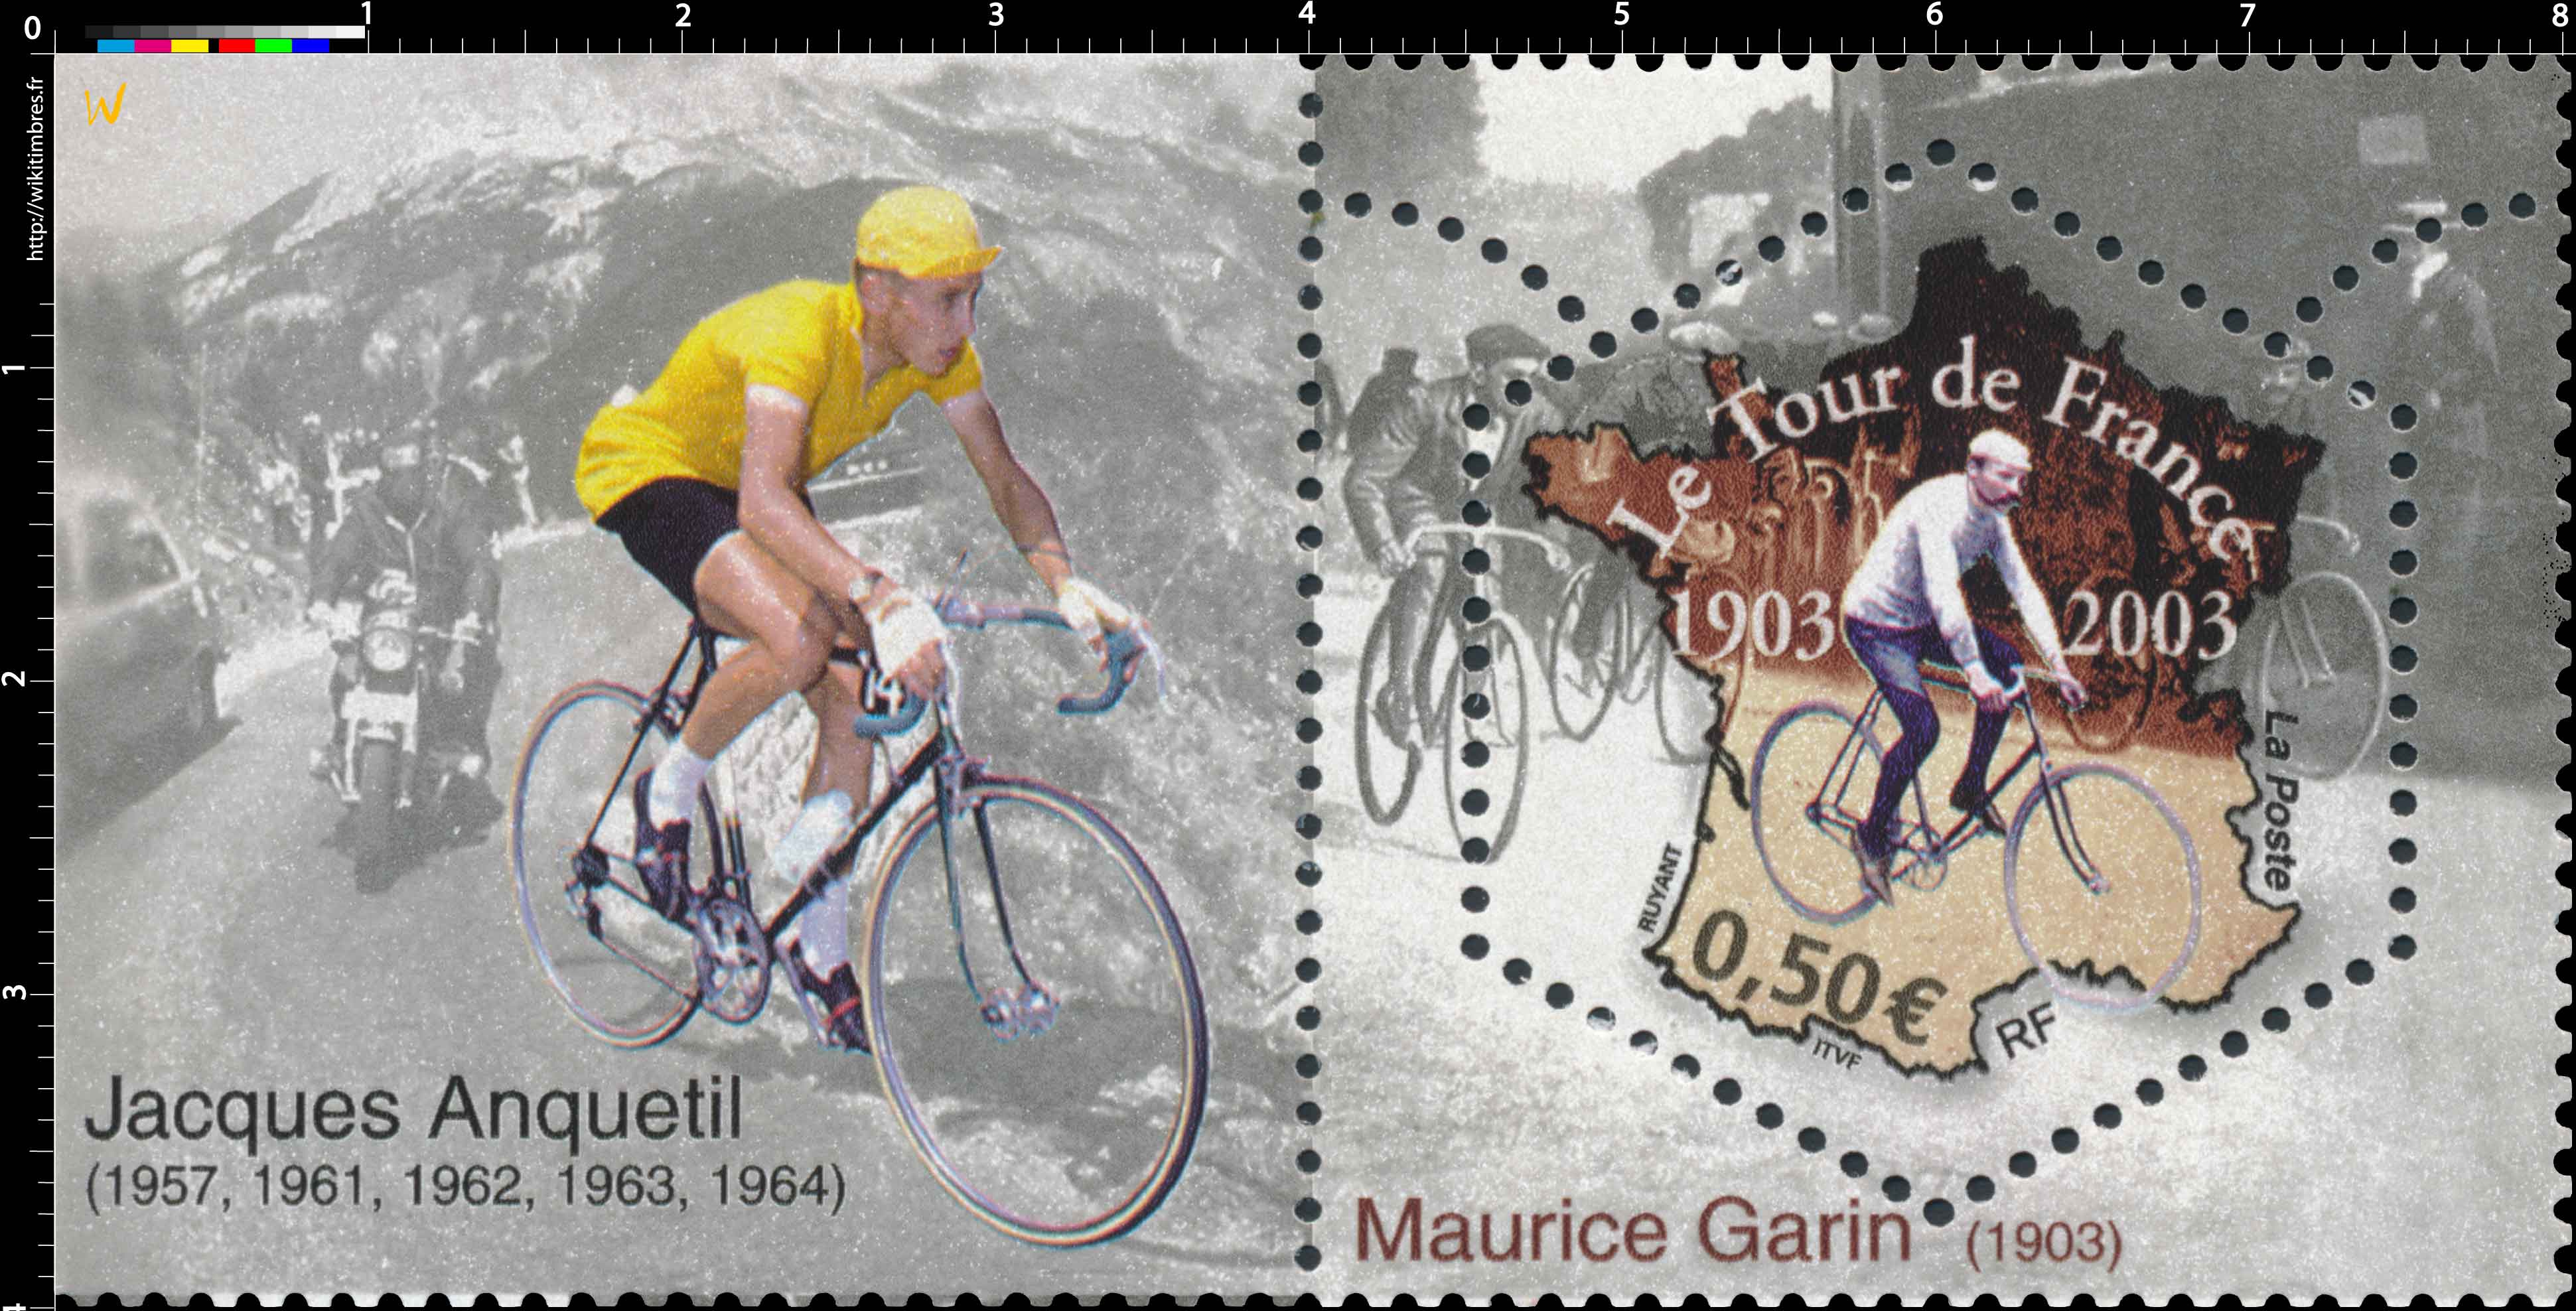 Le Tour de France 1903-2003 Maurice Garni 1903